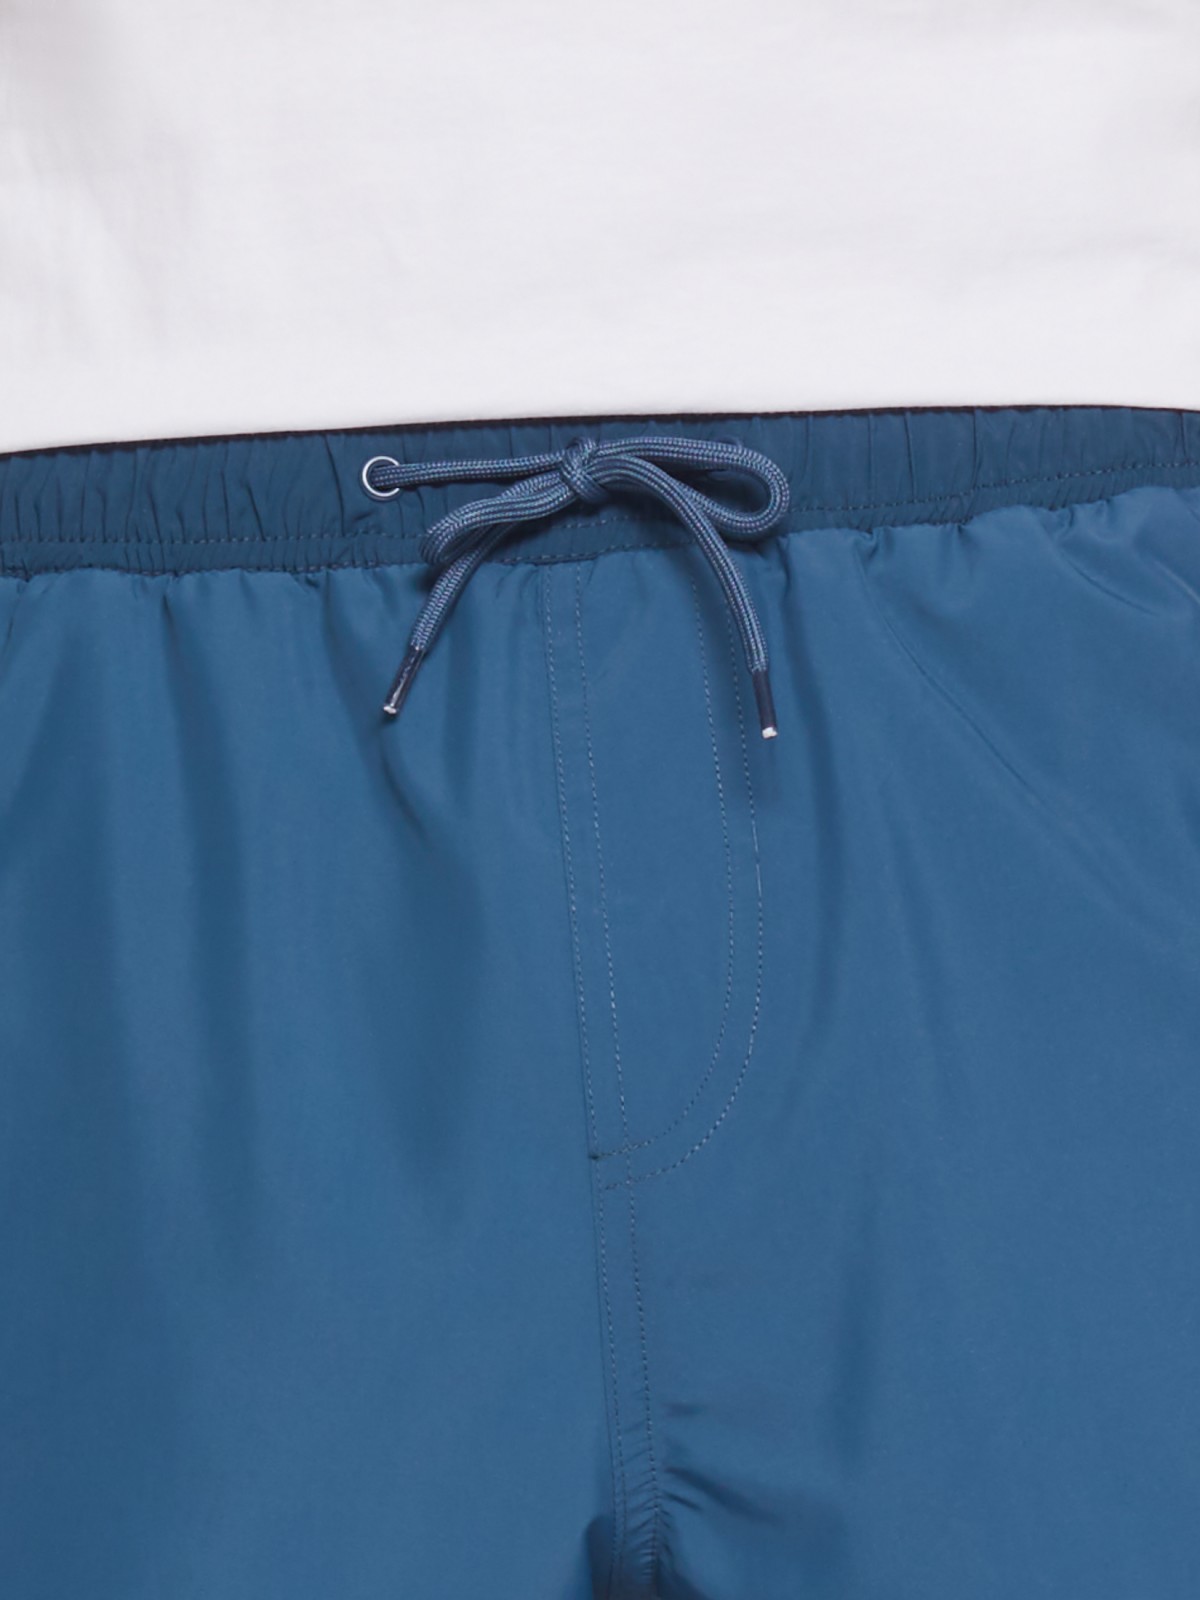 Плавательные шорты zolla 212257S59032, цвет темно-бирюзовый, размер S - фото 3